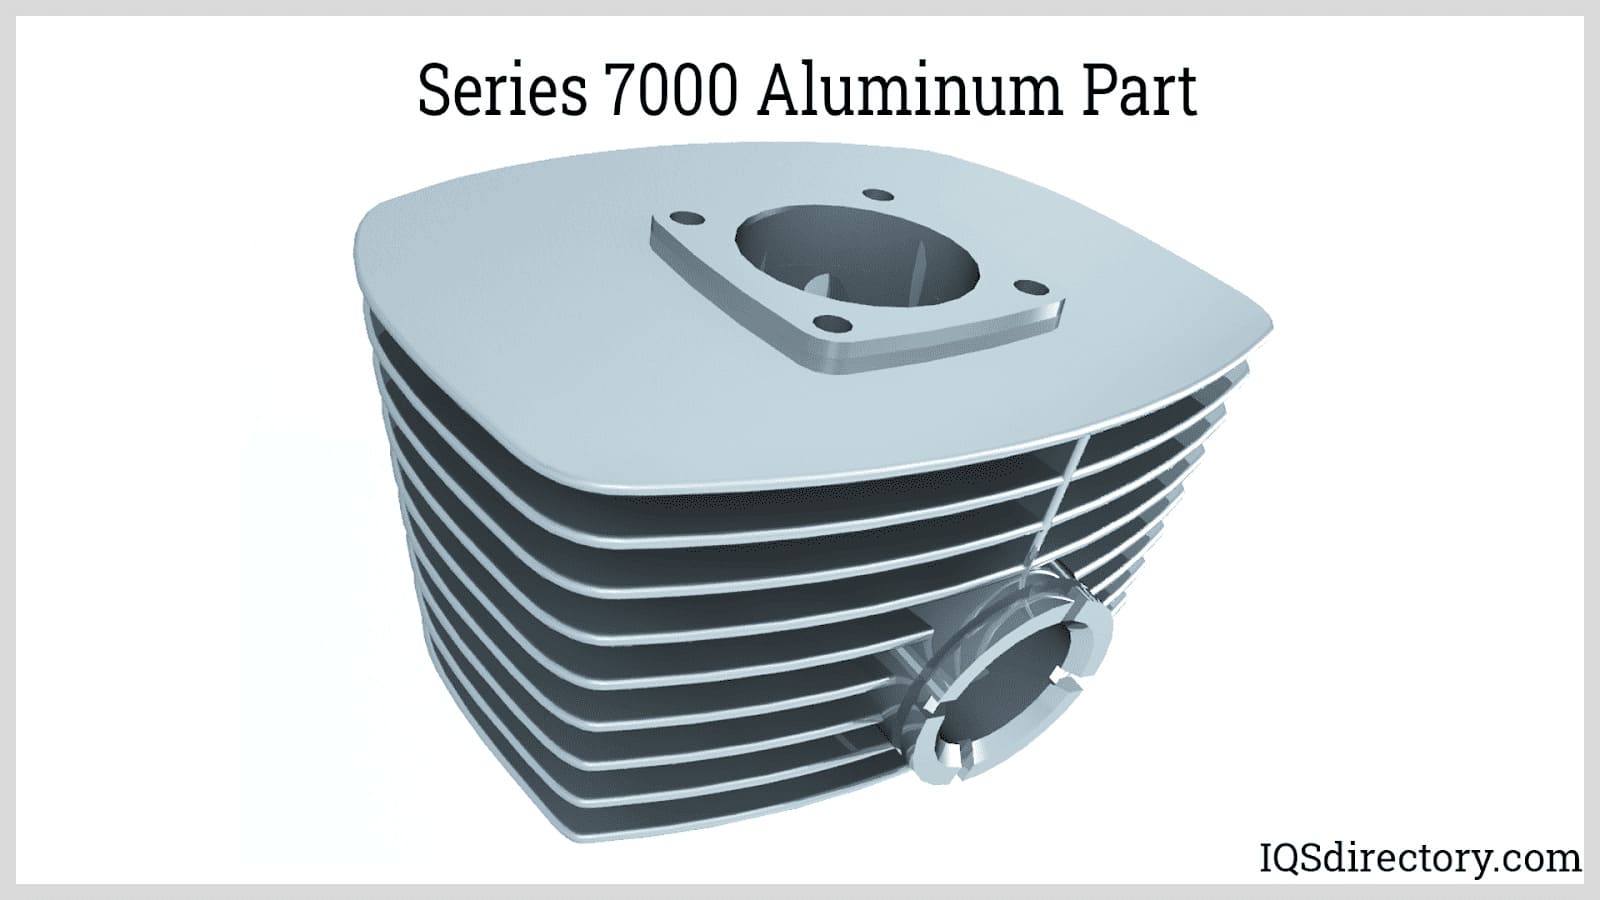 Series 7000 Aluminum Part